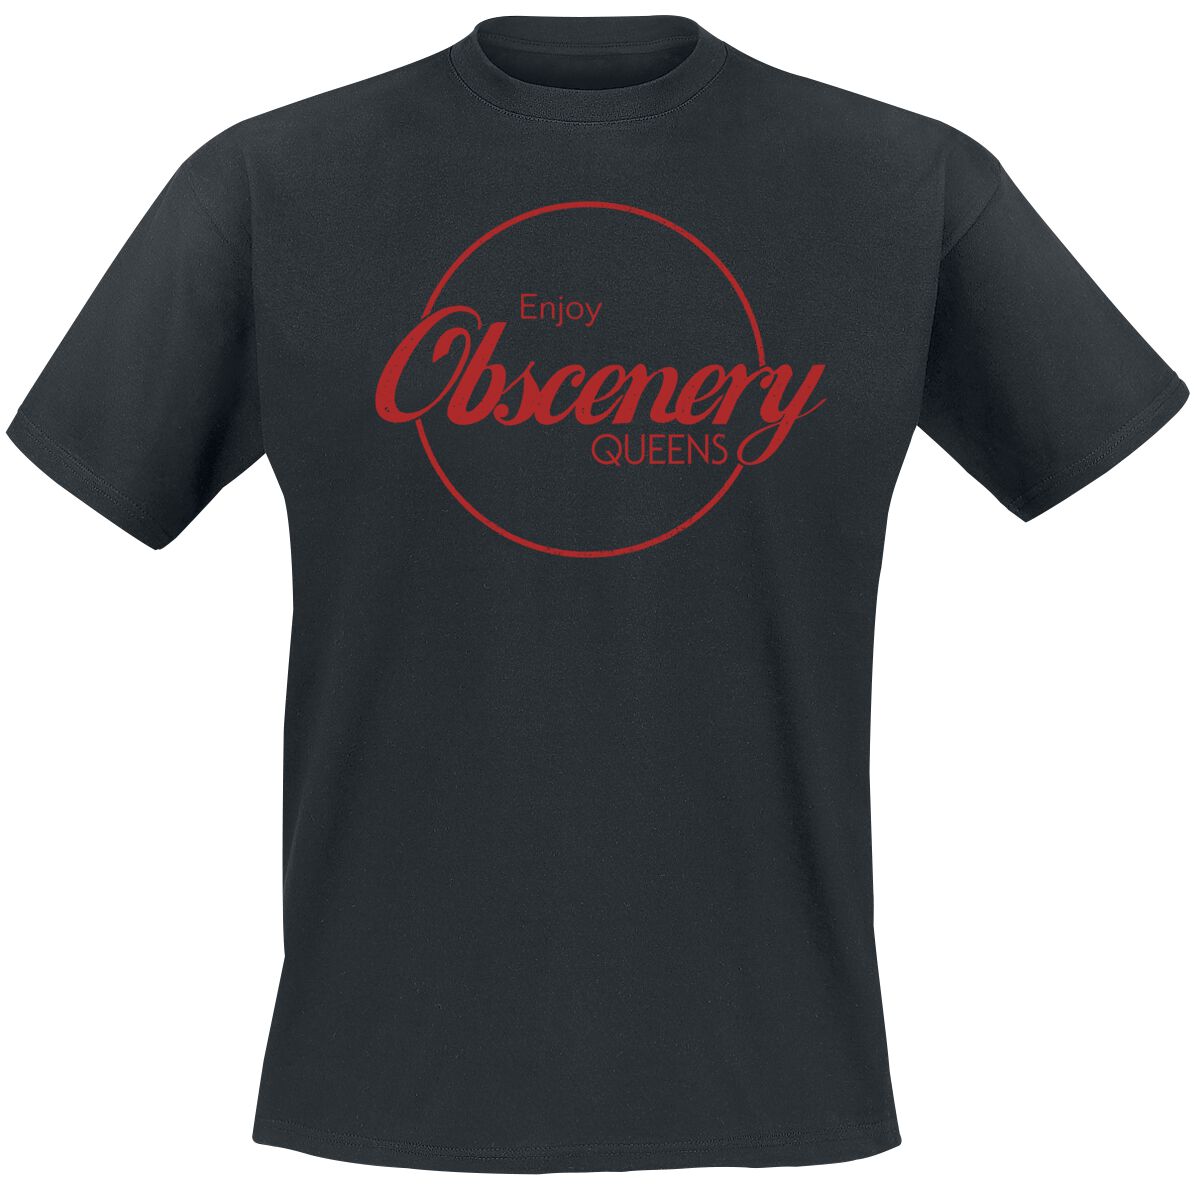 Queens Of The Stone Age T-Shirt - Enjoy Obscenery - S bis XXL - für Männer - Größe M - schwarz  - Lizenziertes Merchandise!